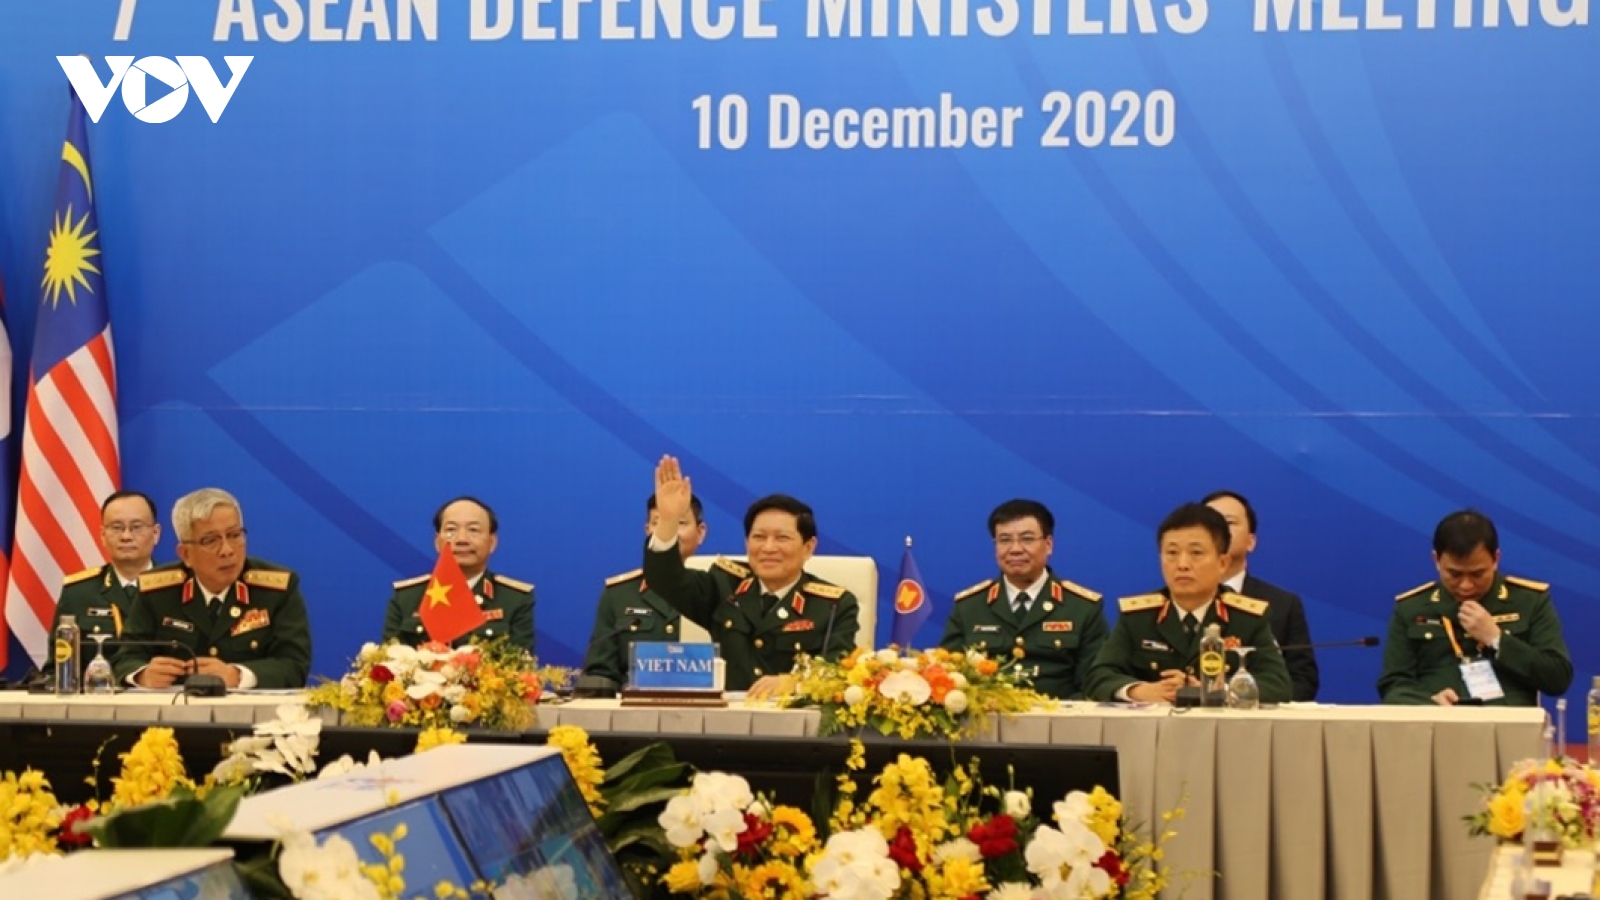 Sau Hội nghị ADMM+ thành công, Việt Nam bàn giao cương vị Chủ tịch ASEAN cho Brunei